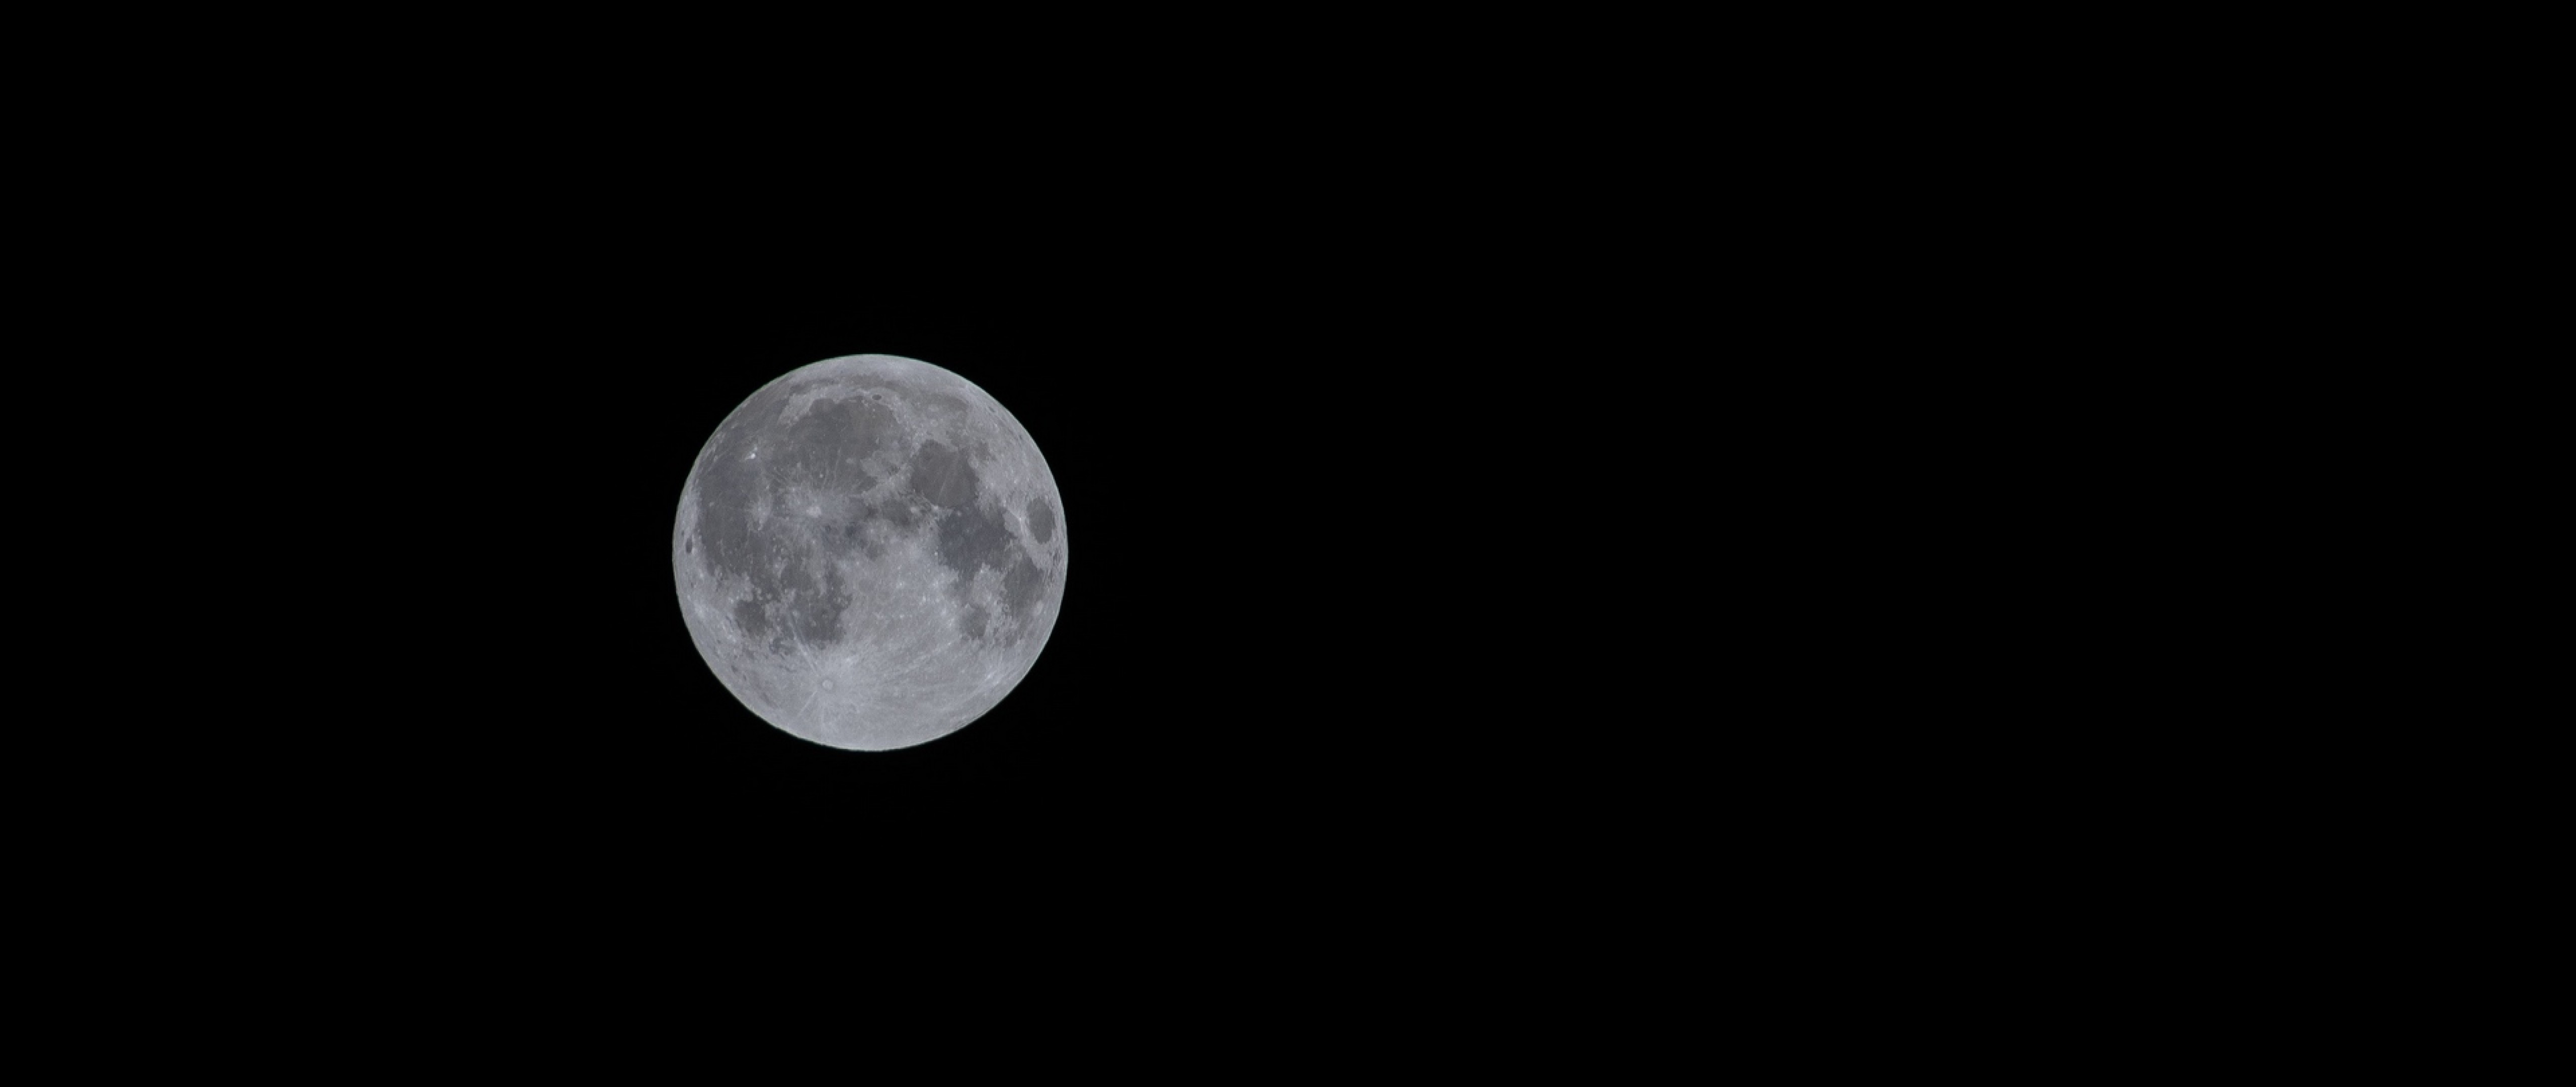 Black & White image of full moon HD Wallpaper